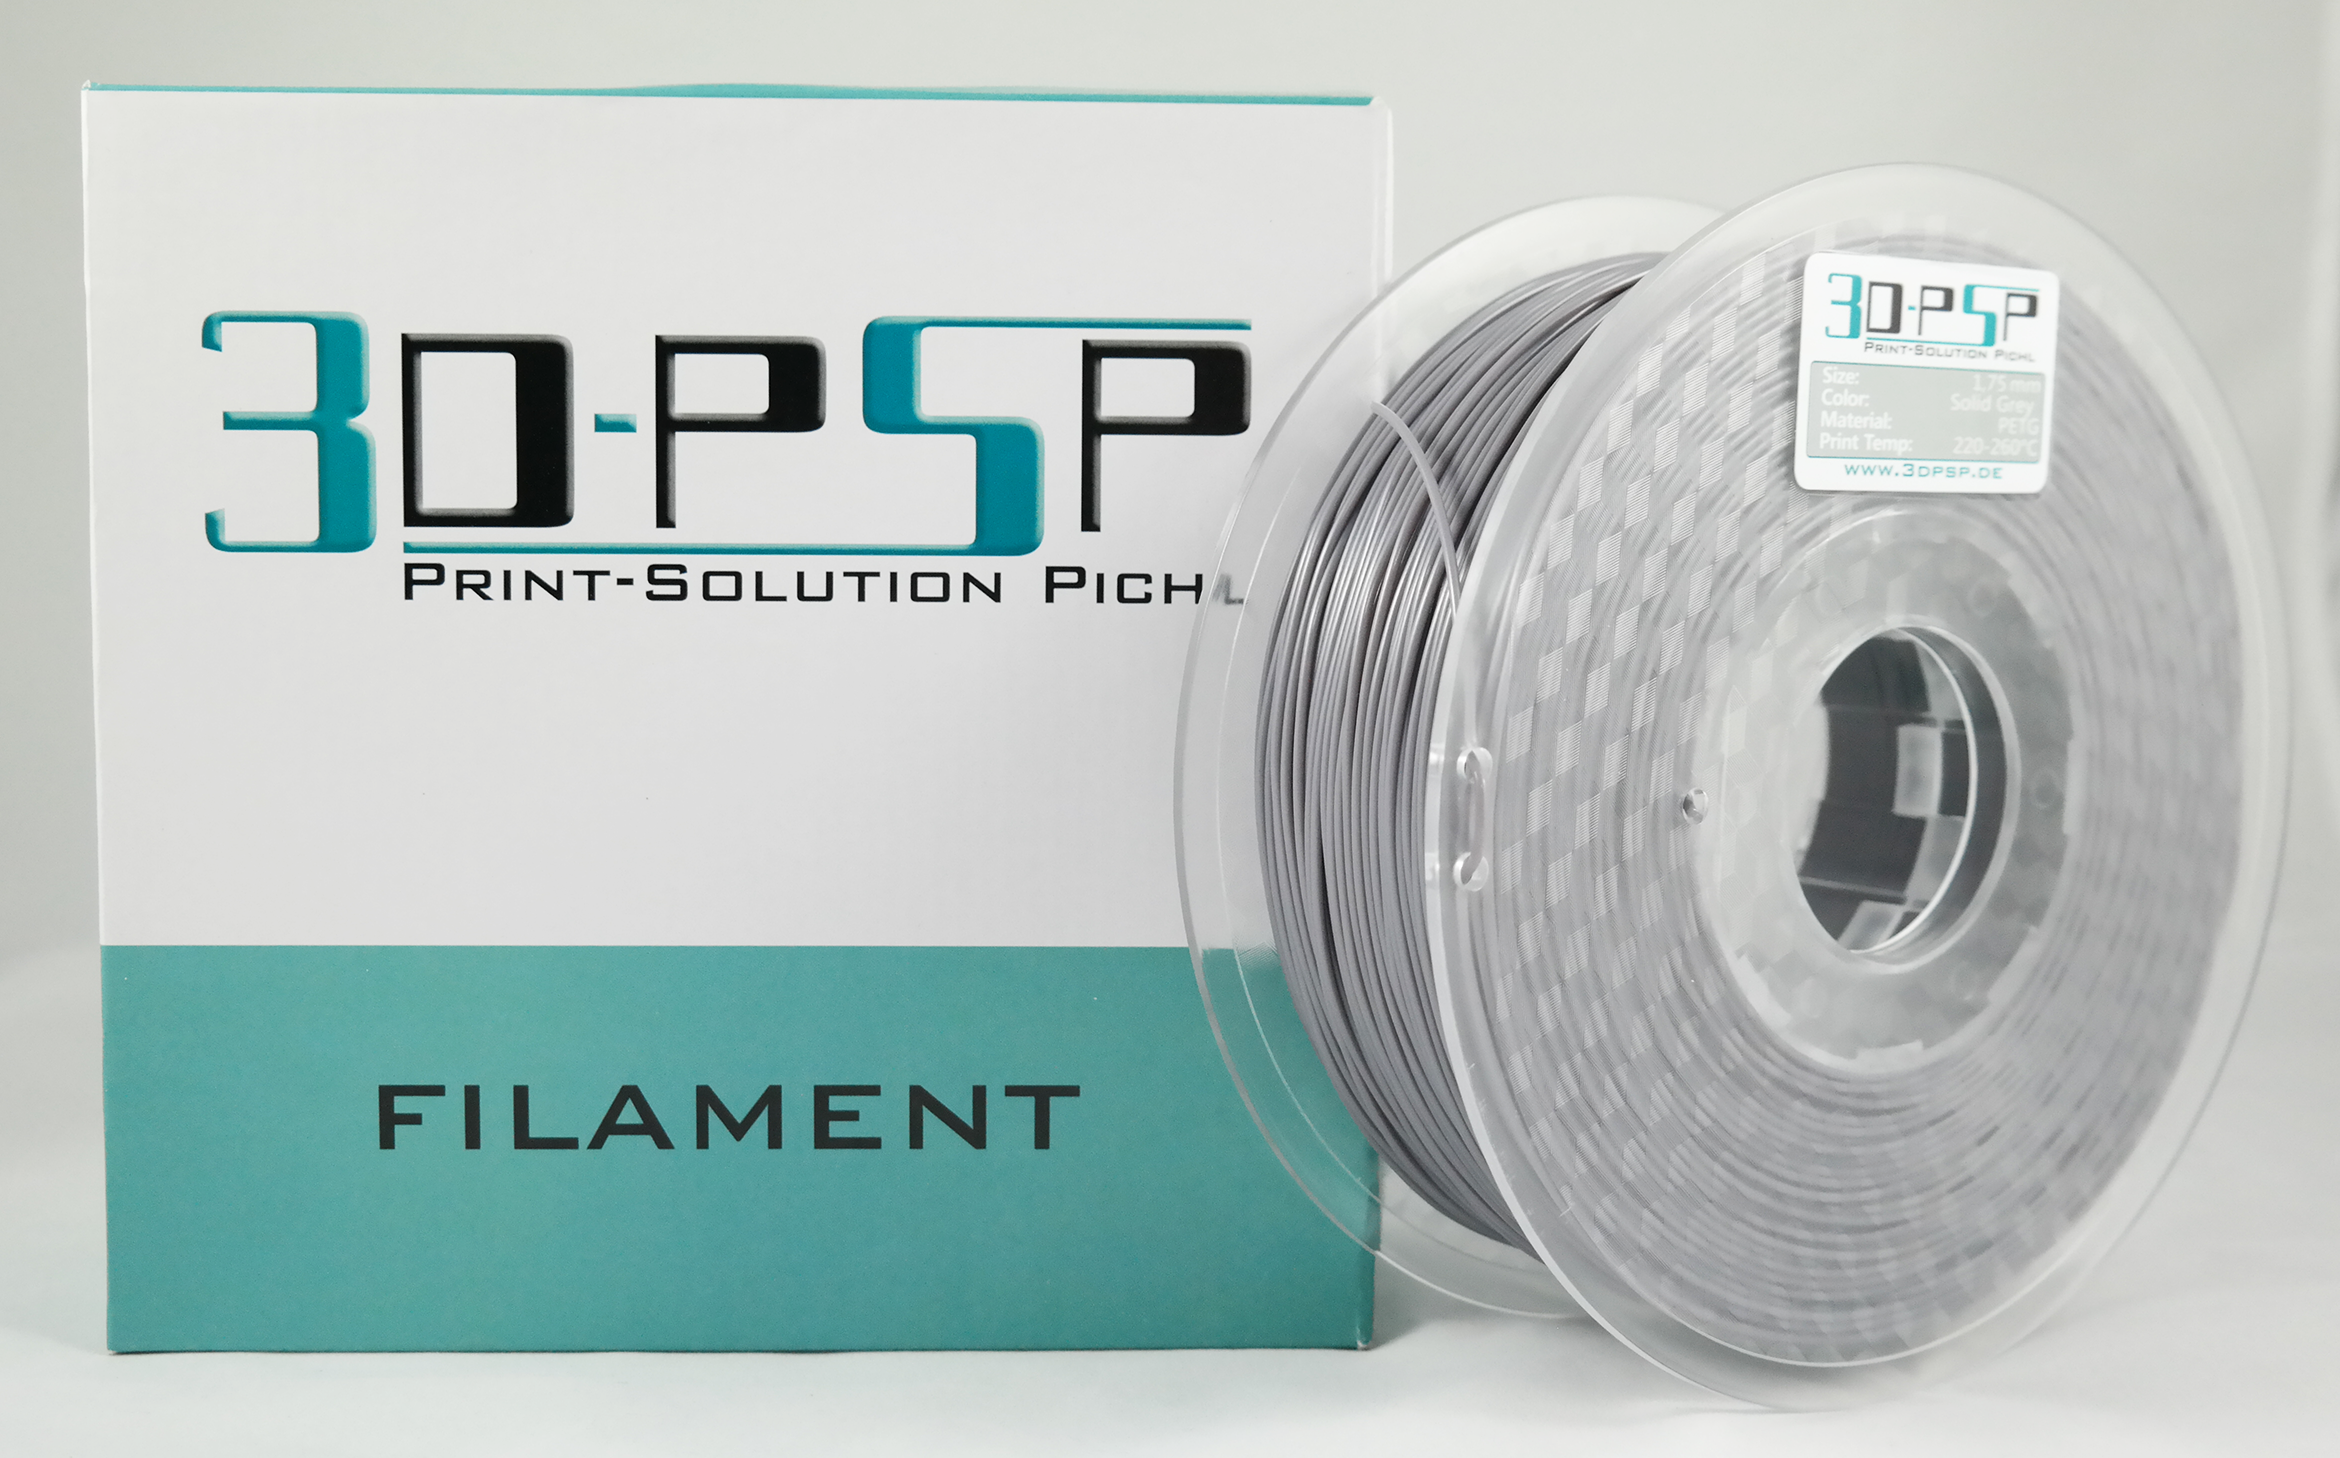 3DPSP HT-PETG Filament - Solid Grey - 1.75mm - 1Kg